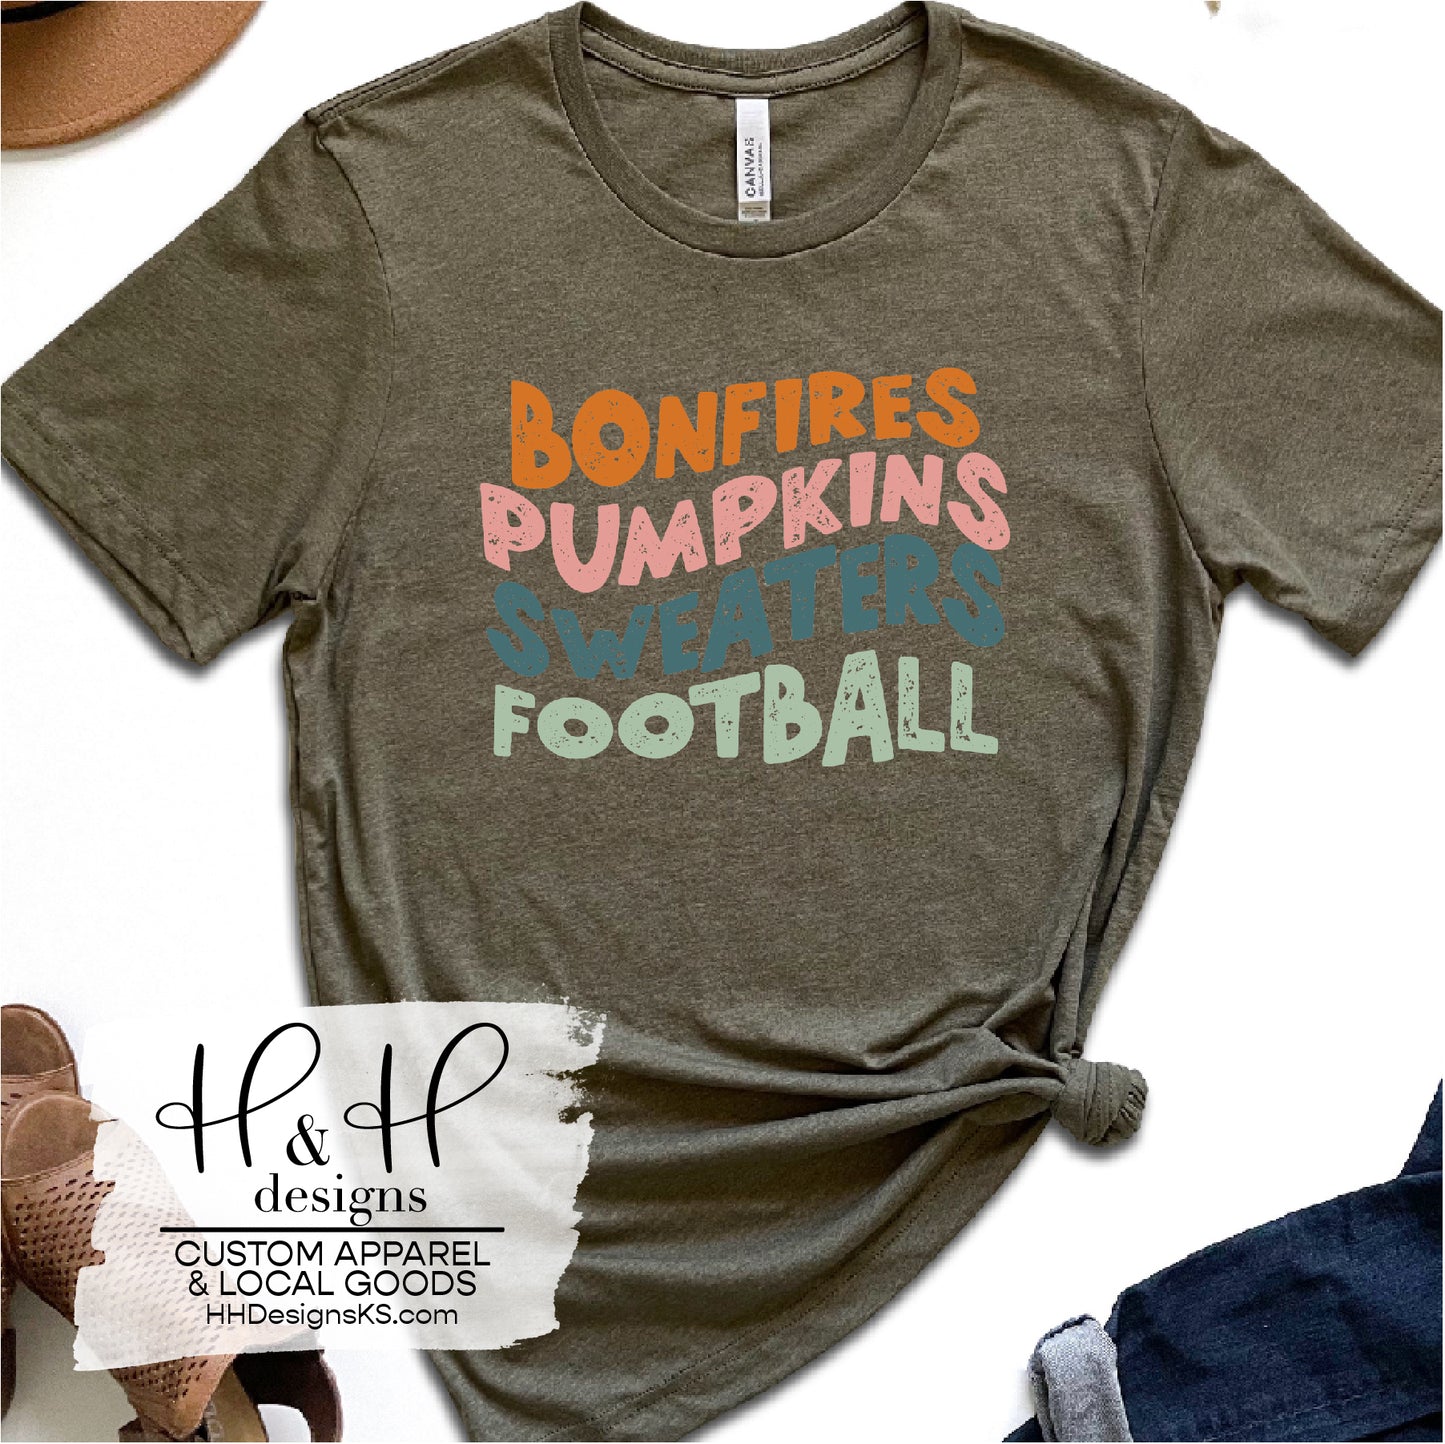 Bonfires Pumpkins Sweaters Football Retro Wavy